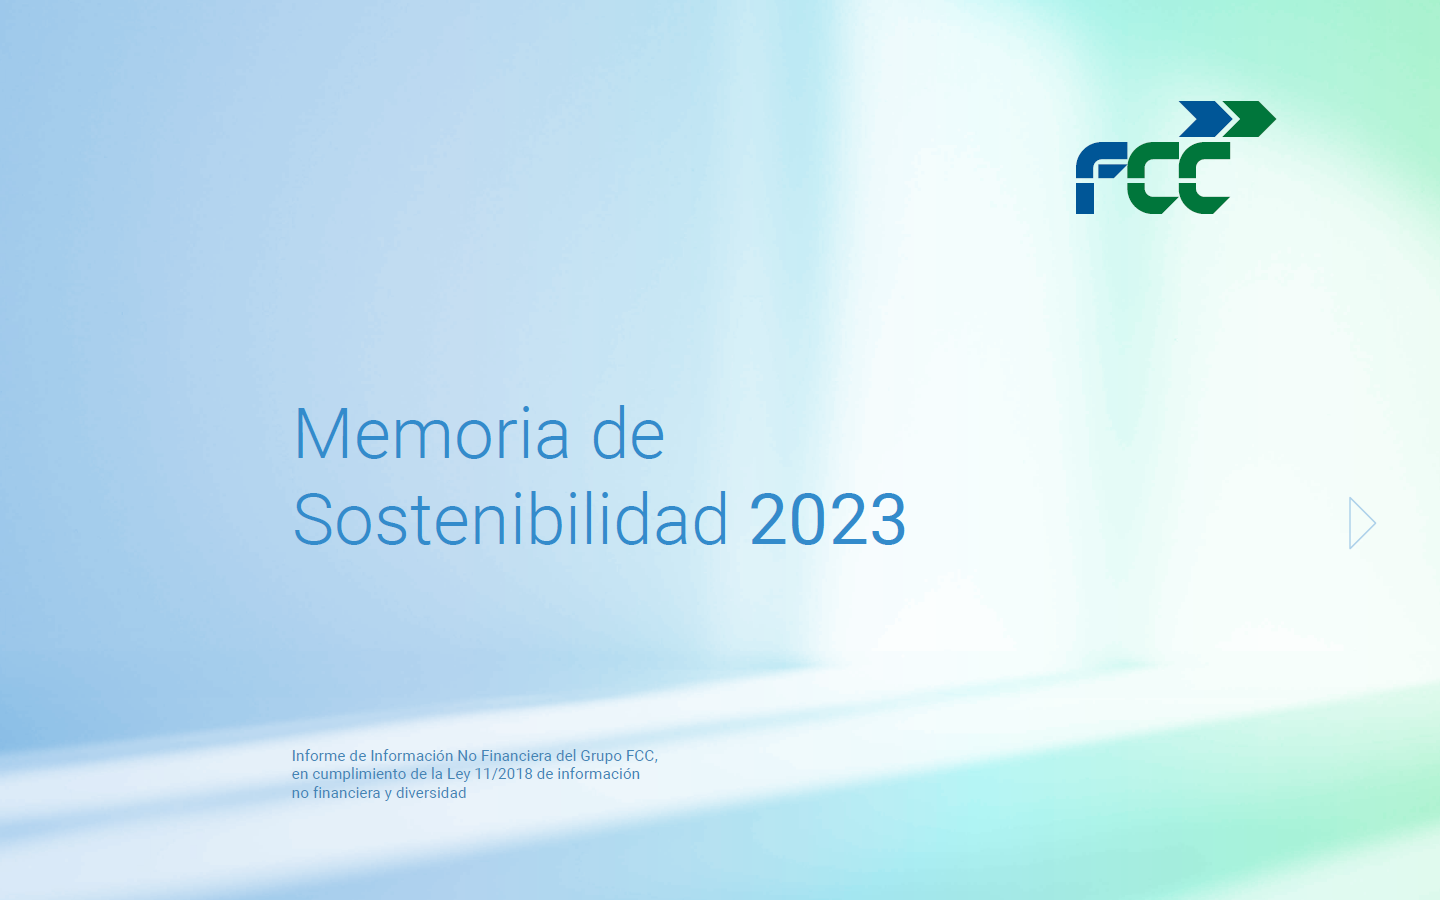 Memoria de Sostenibilidad Grupo FCC 2023